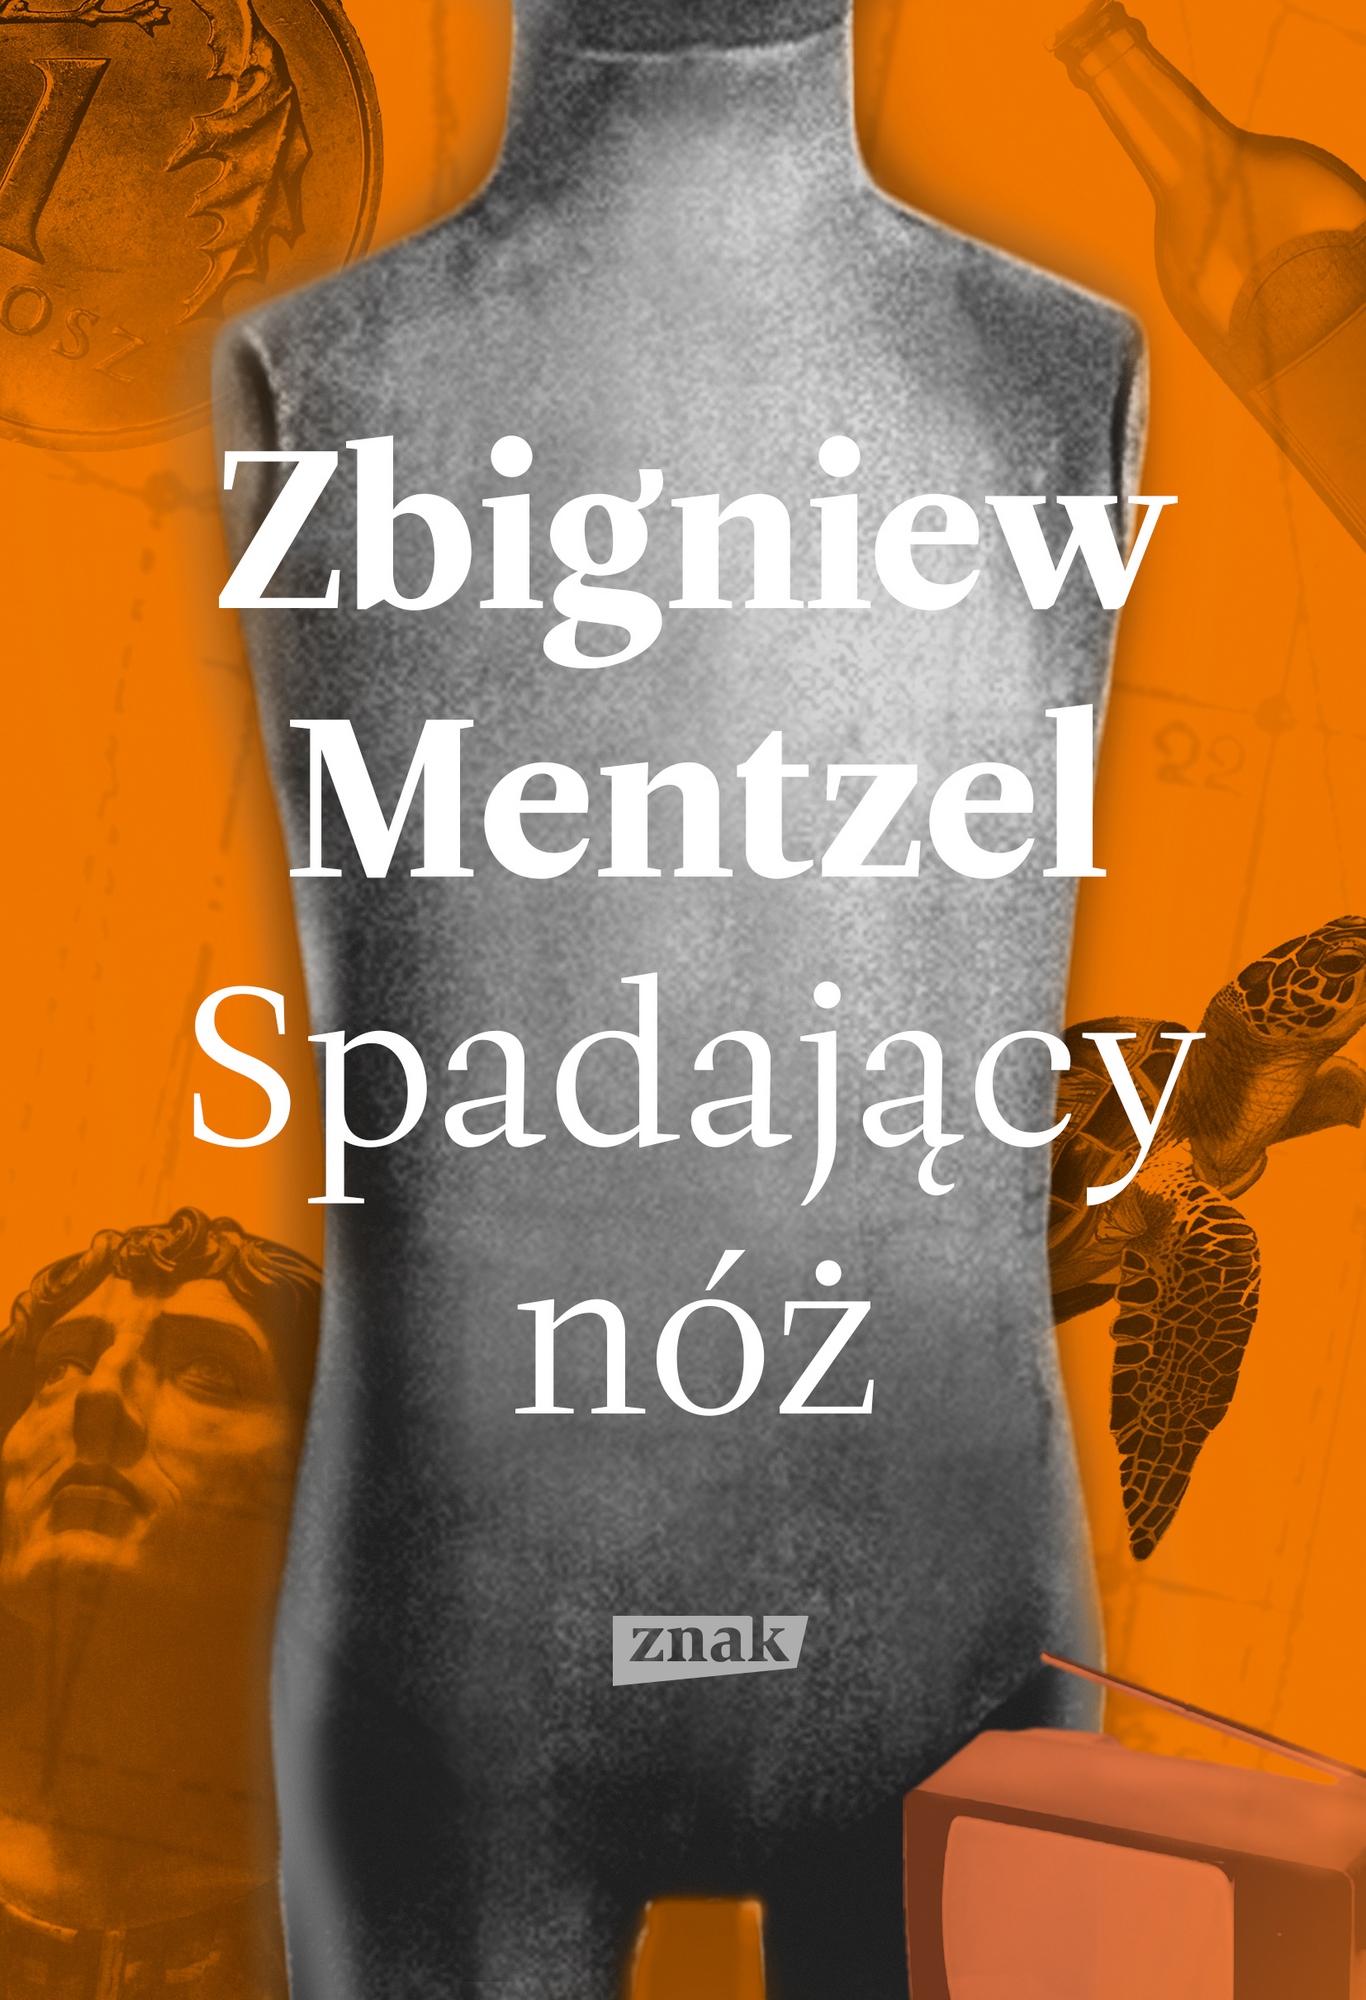 Zbigniew Mentzel, „Spadający nóż” – okładka (źródło: materiały prasowe)